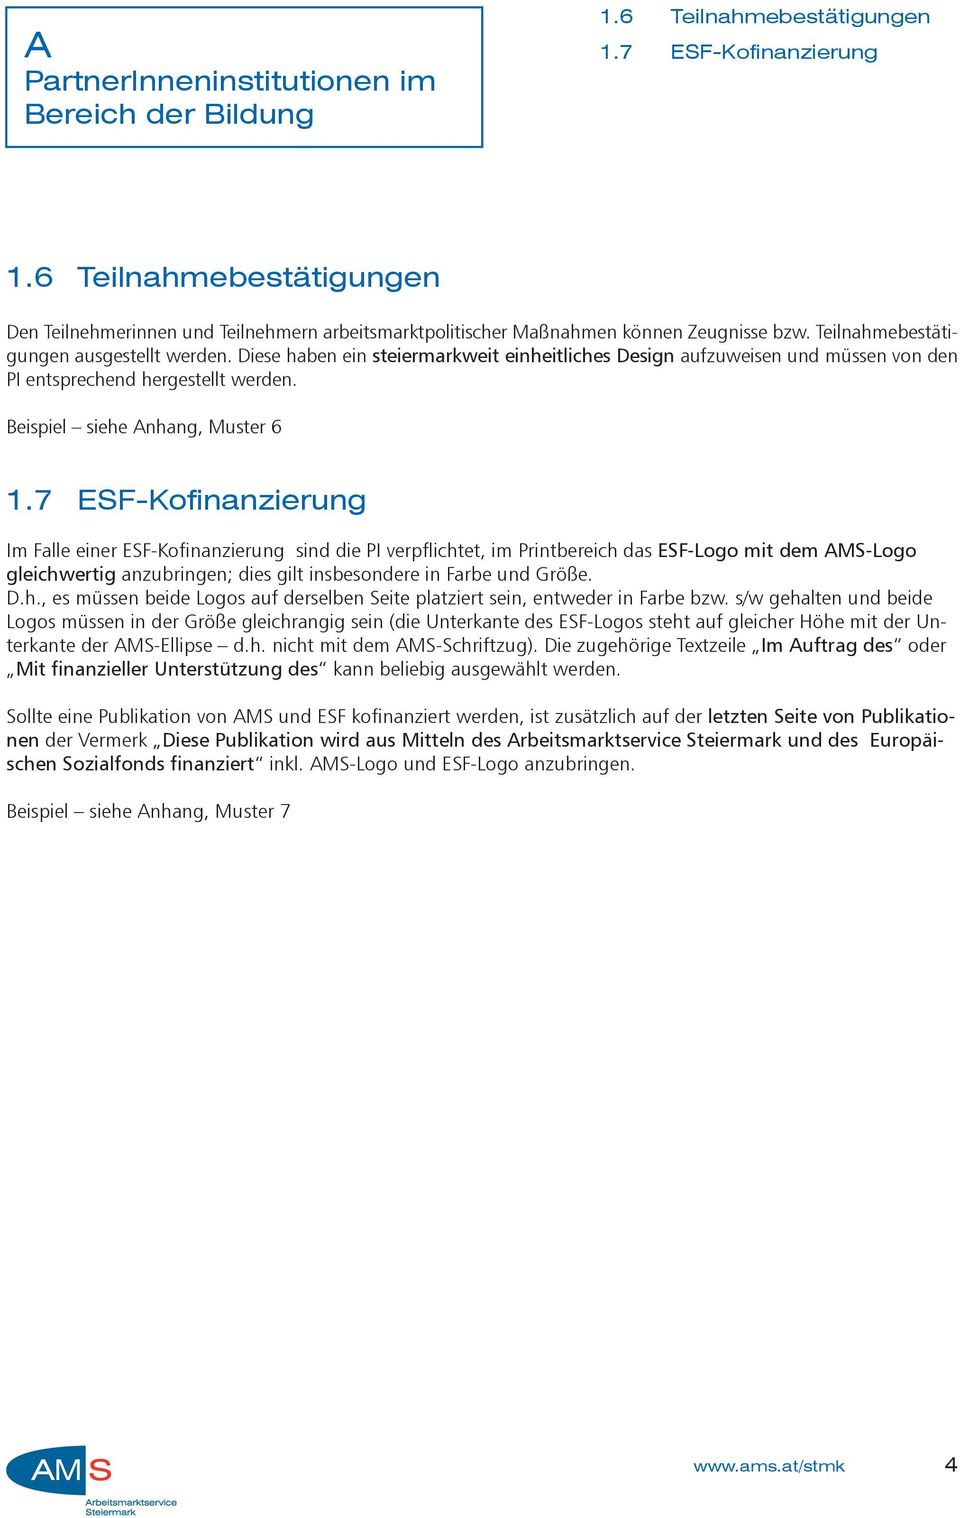 7 ESF-Kofinanzierung Im Falle einer ESF-Kofinanzierung sind die PI verpflichtet, im Printbereich das ESF-Logo mit dem AMS-Logo gleichwertig anzubringen; dies gilt insbesondere in Farbe und Größe. D.h., es müssen beide Logos auf derselben Seite platziert sein, entweder in Farbe bzw.